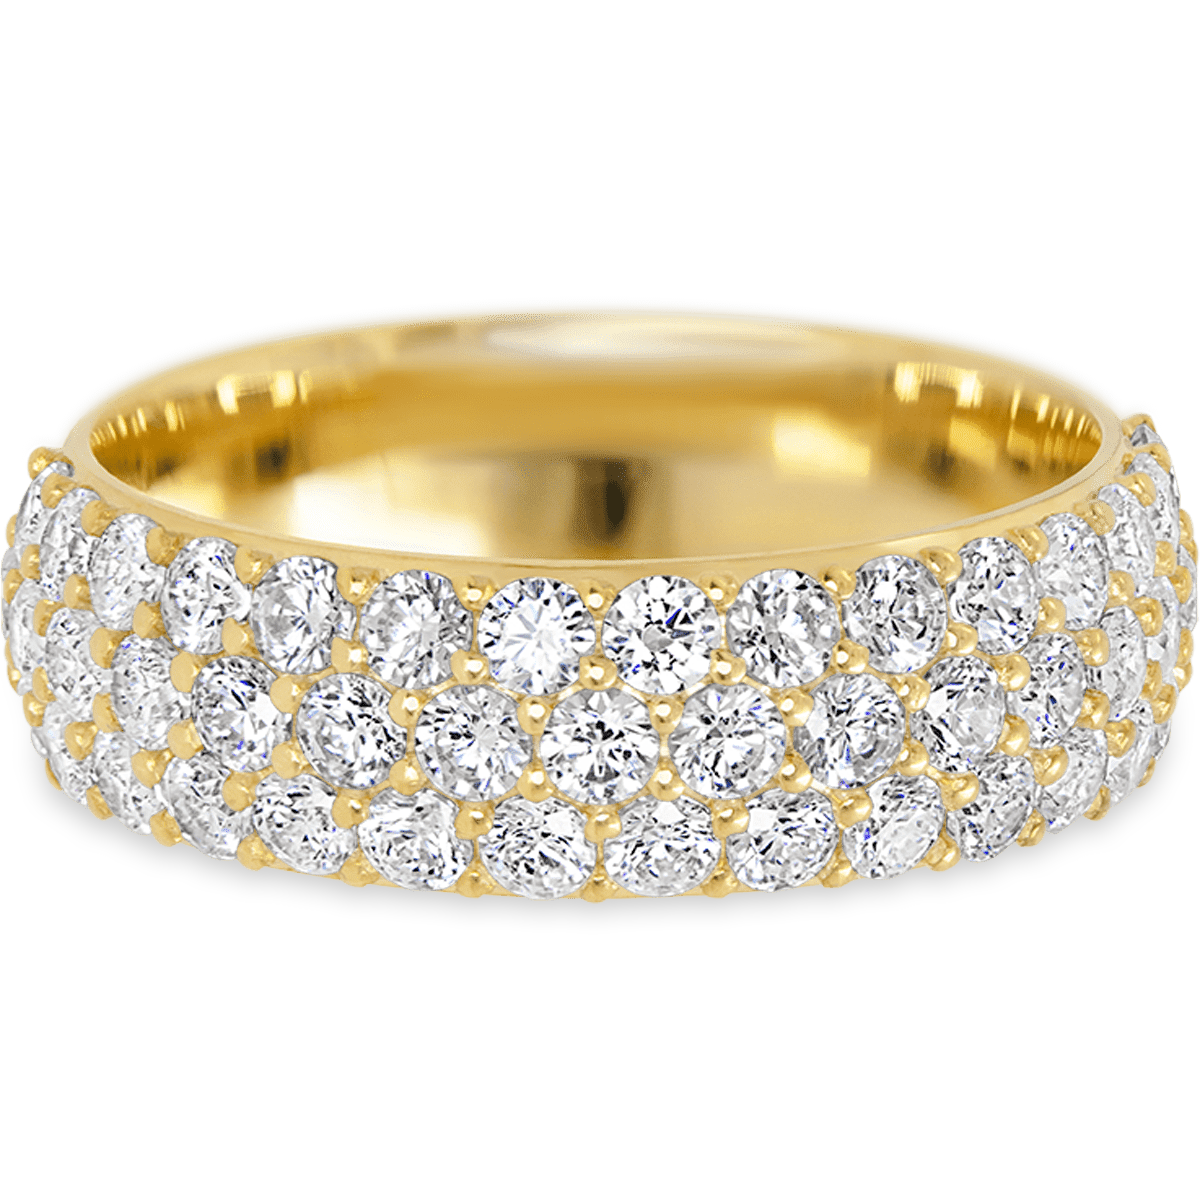 Stunning Diamond Yellow Gold + White Diamonds Womens Wedding or Everyday Ring